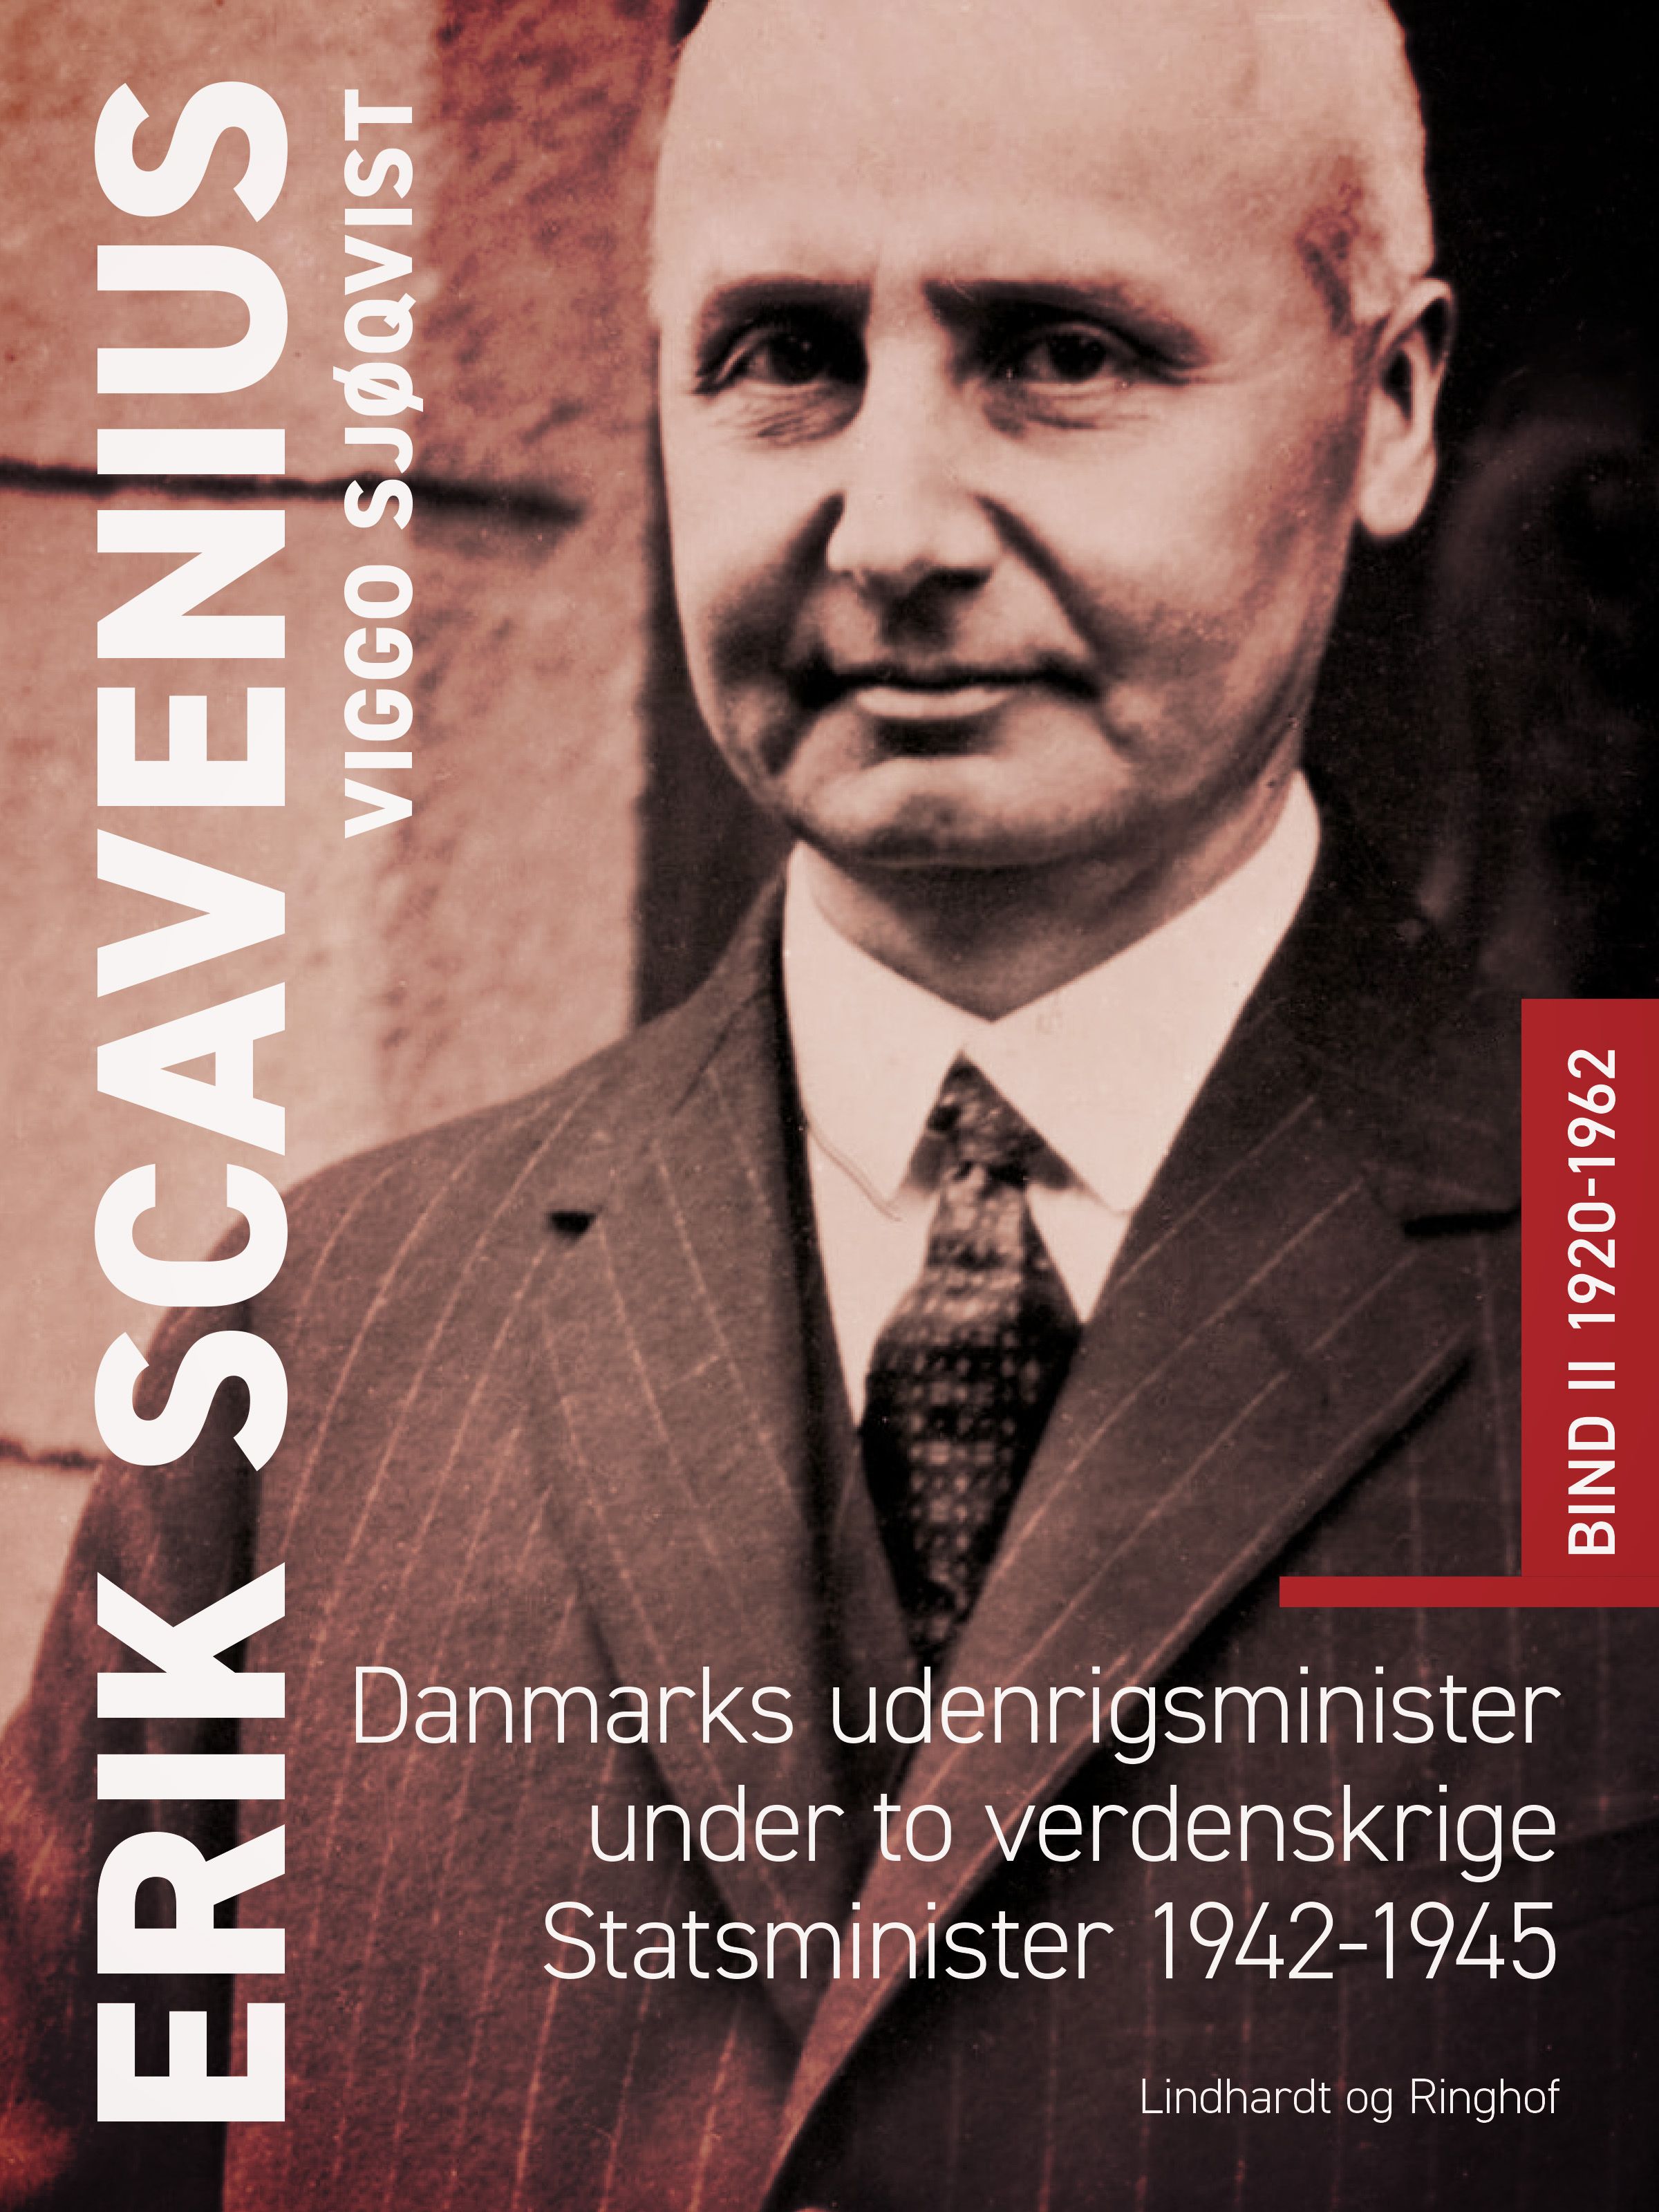 Erik Scavenius. Danmarks udenrigsminister under to verdenskrige. Statsminister 1942-1945. Bind II 1920-1962, e-bog af Viggo Sjøqvist